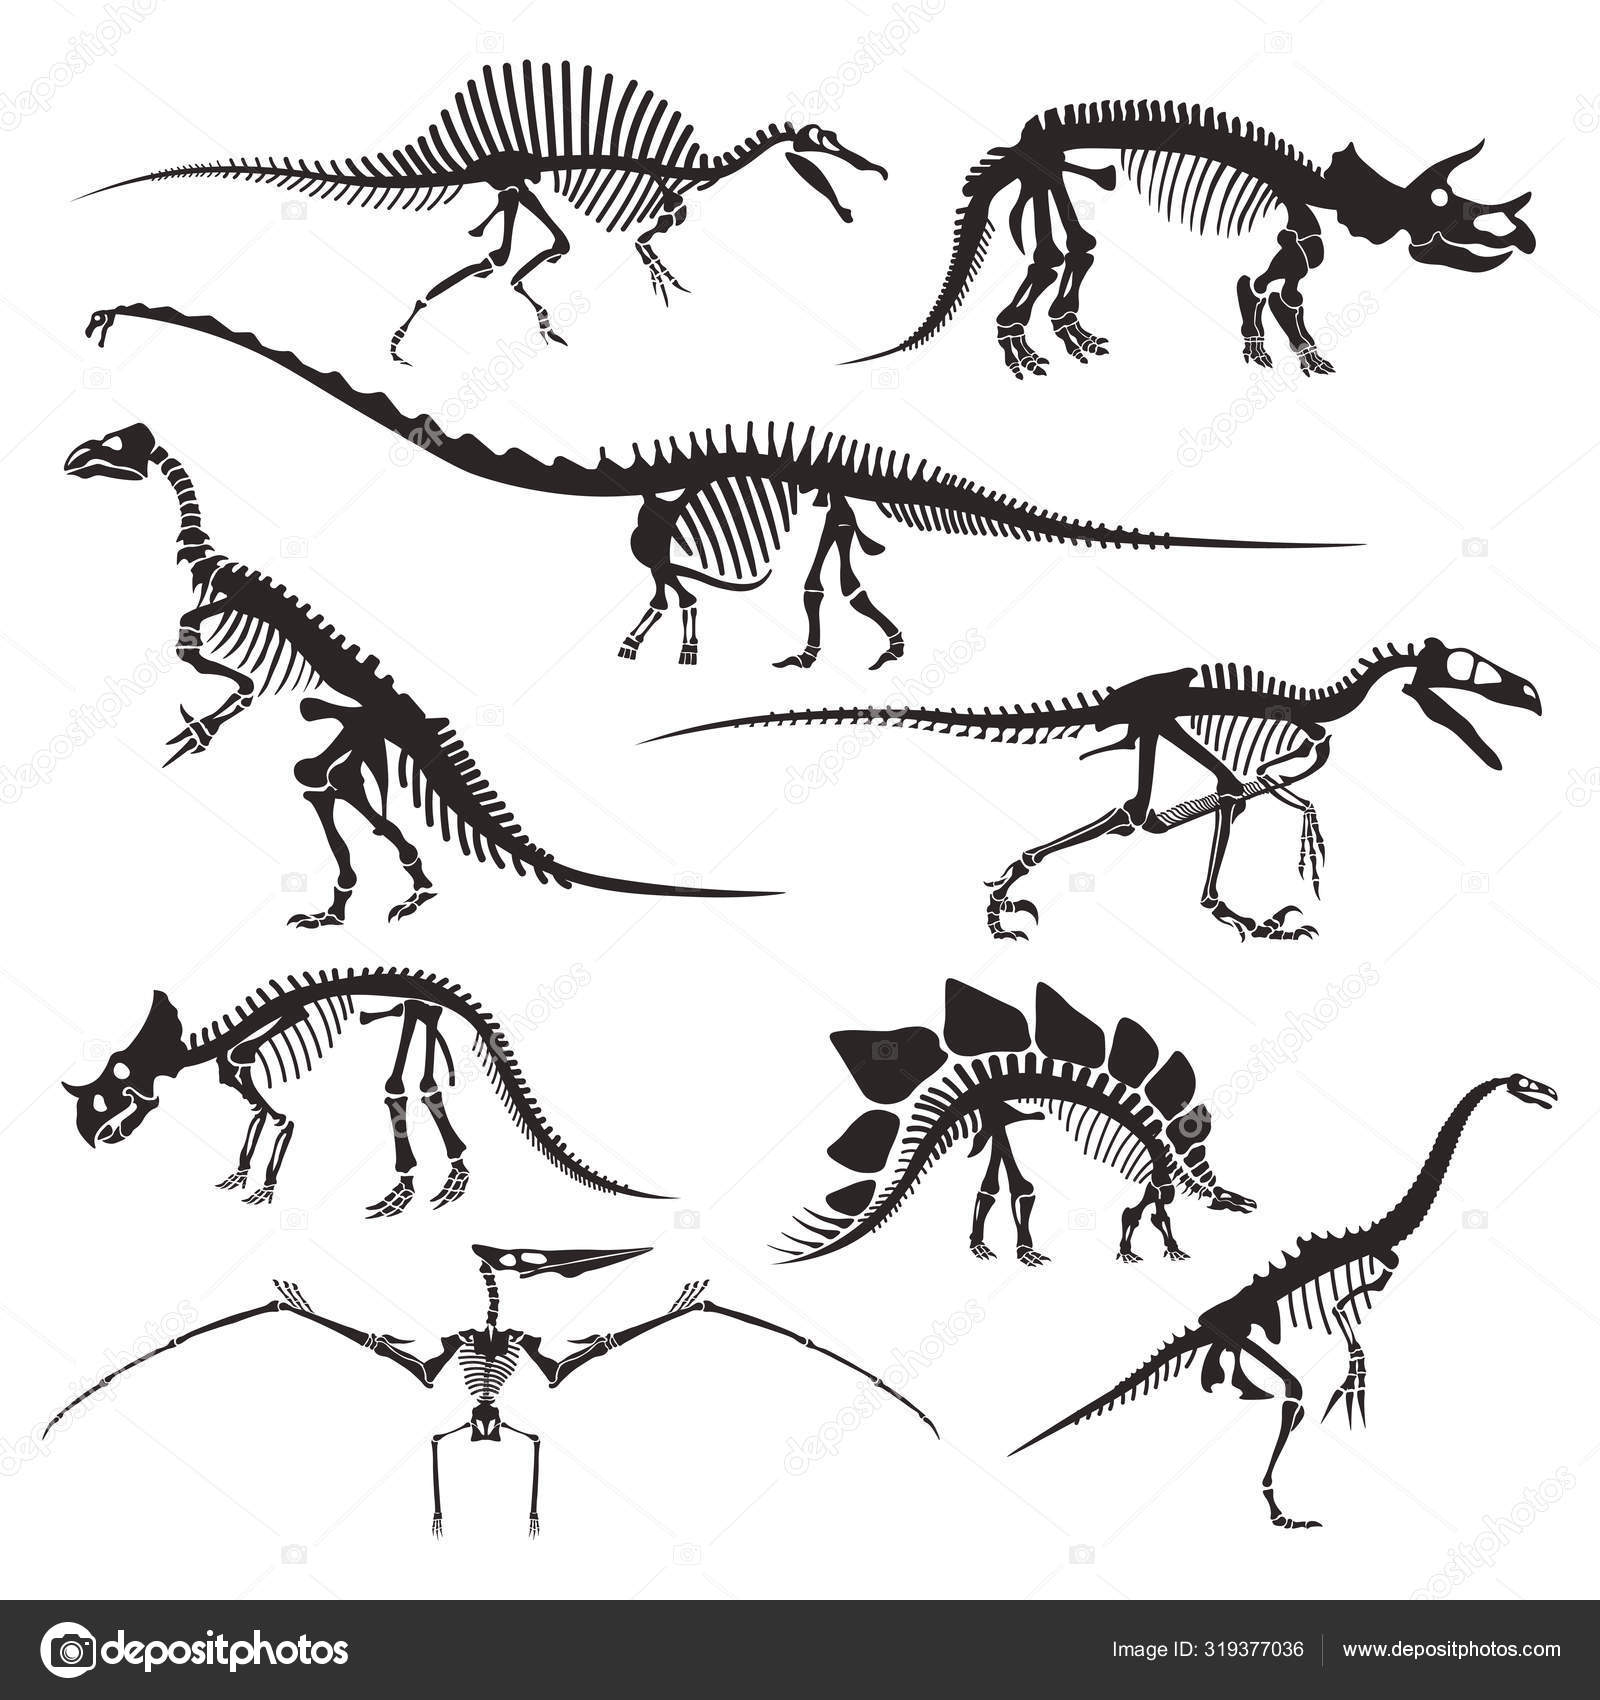 Esqueleto de dinosaurio imágenes de stock de arte vectorial | Depositphotos